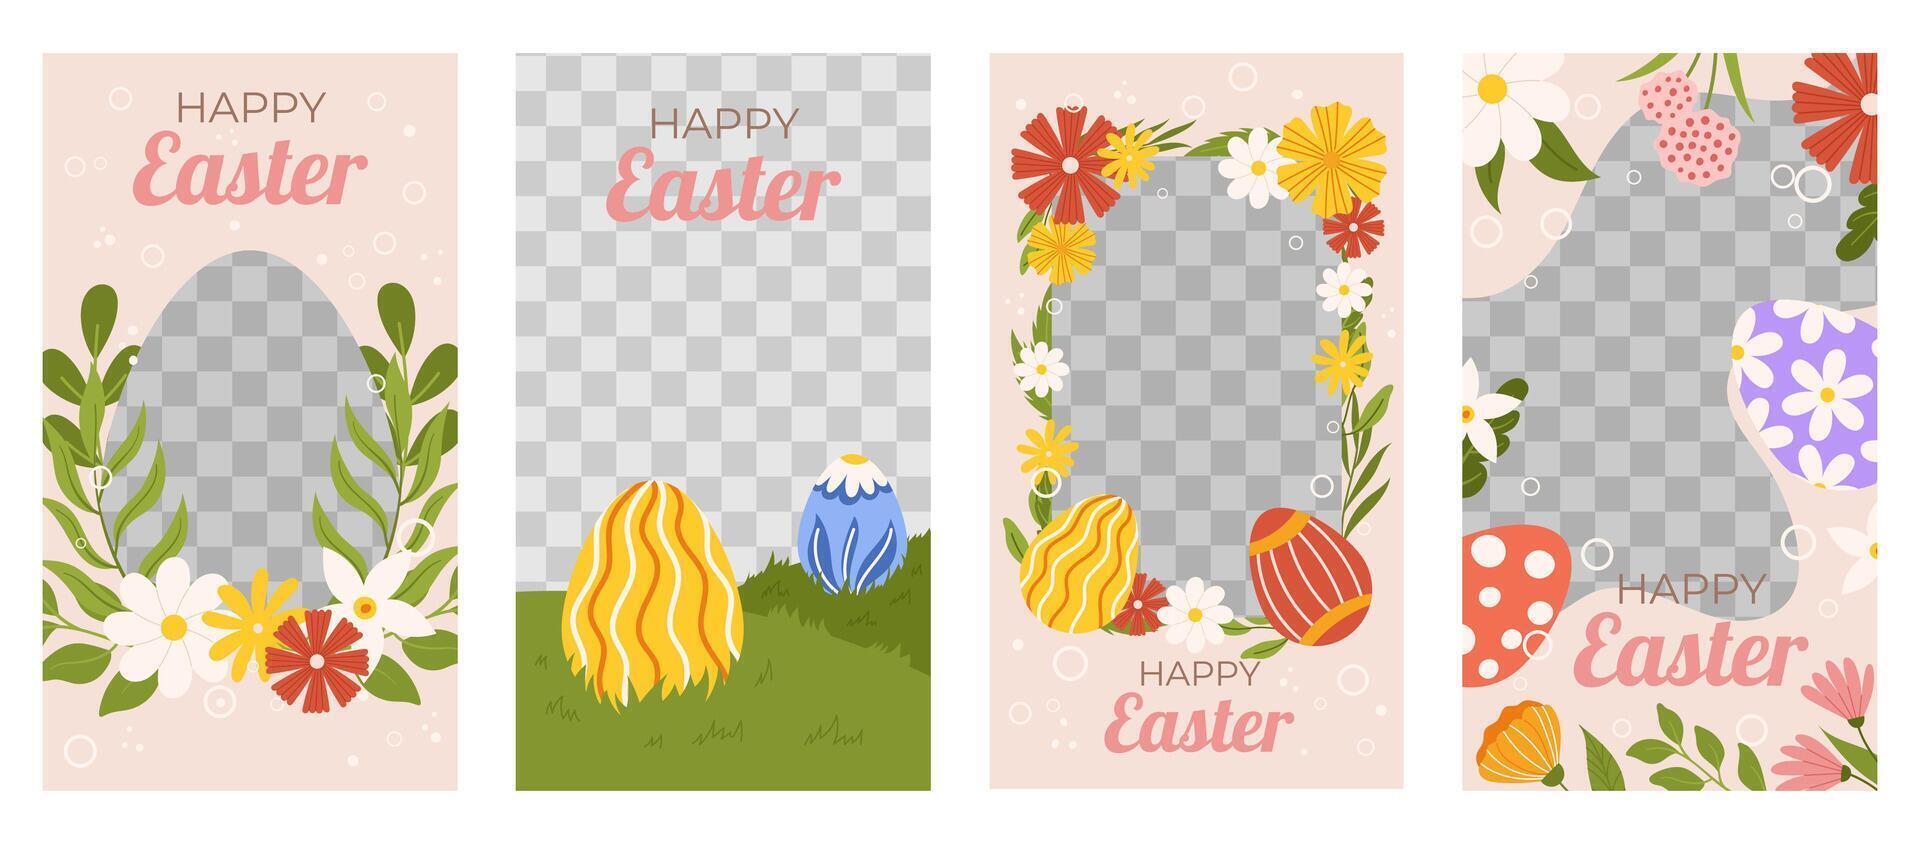 Pascua de Resurrección colección de vertical social medios de comunicación modelo. diseño con transparente marco para foto decorado con pintado huevos, flores y hojas. primavera fiesta saludo tarjeta vector